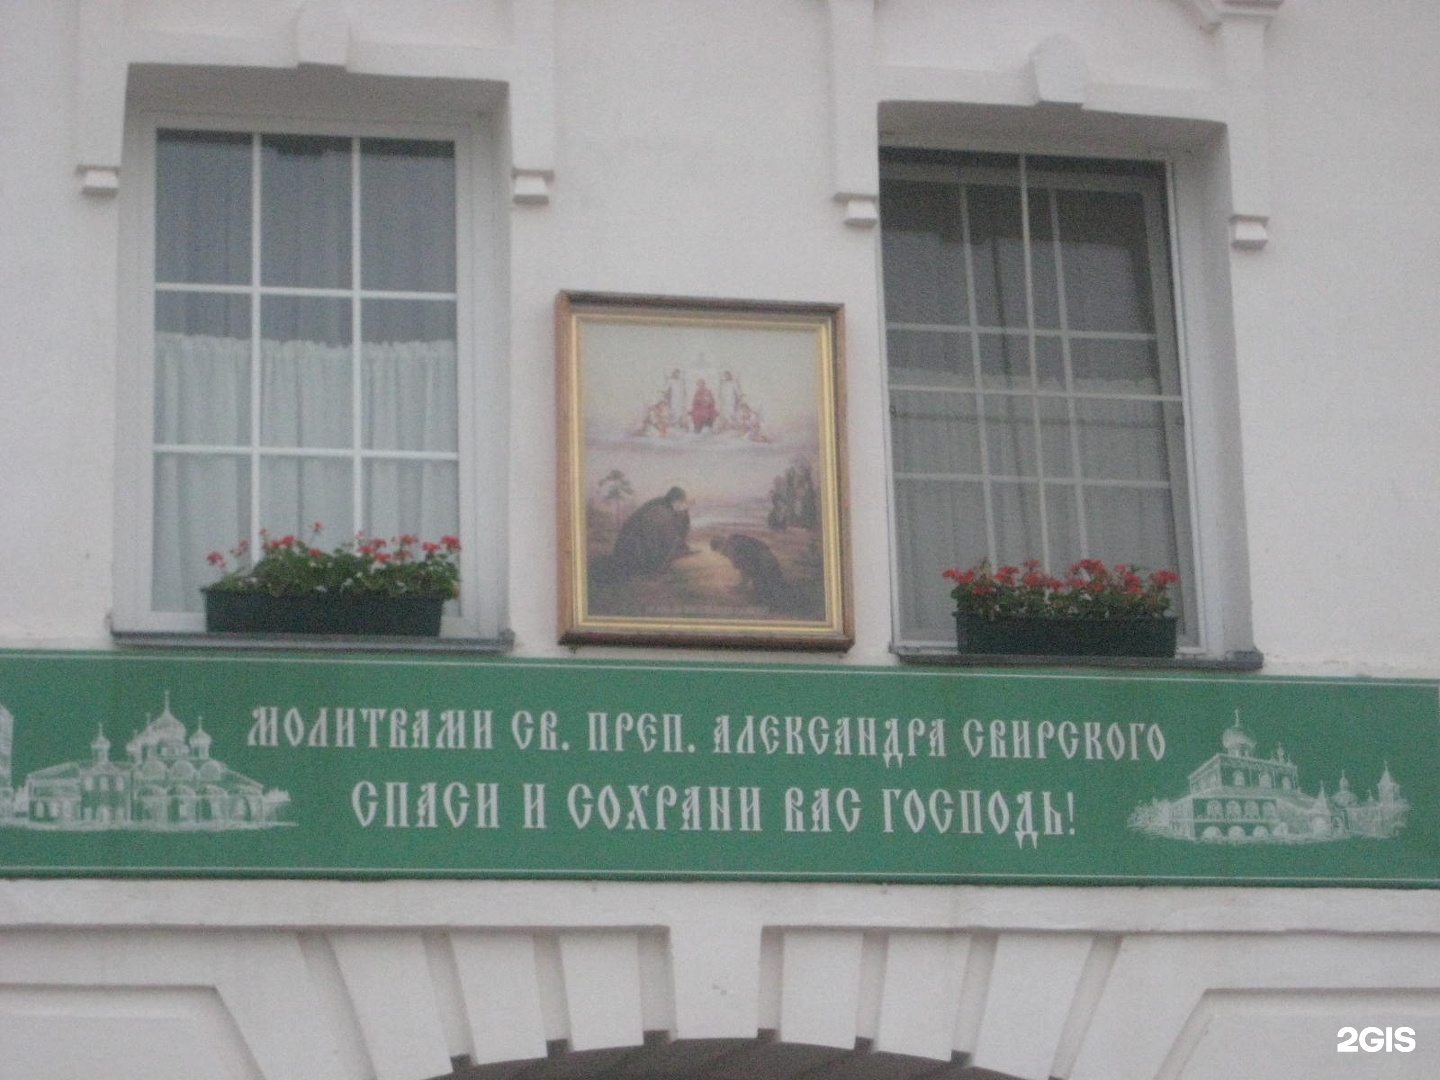 Паломнические службы санкт петербурга